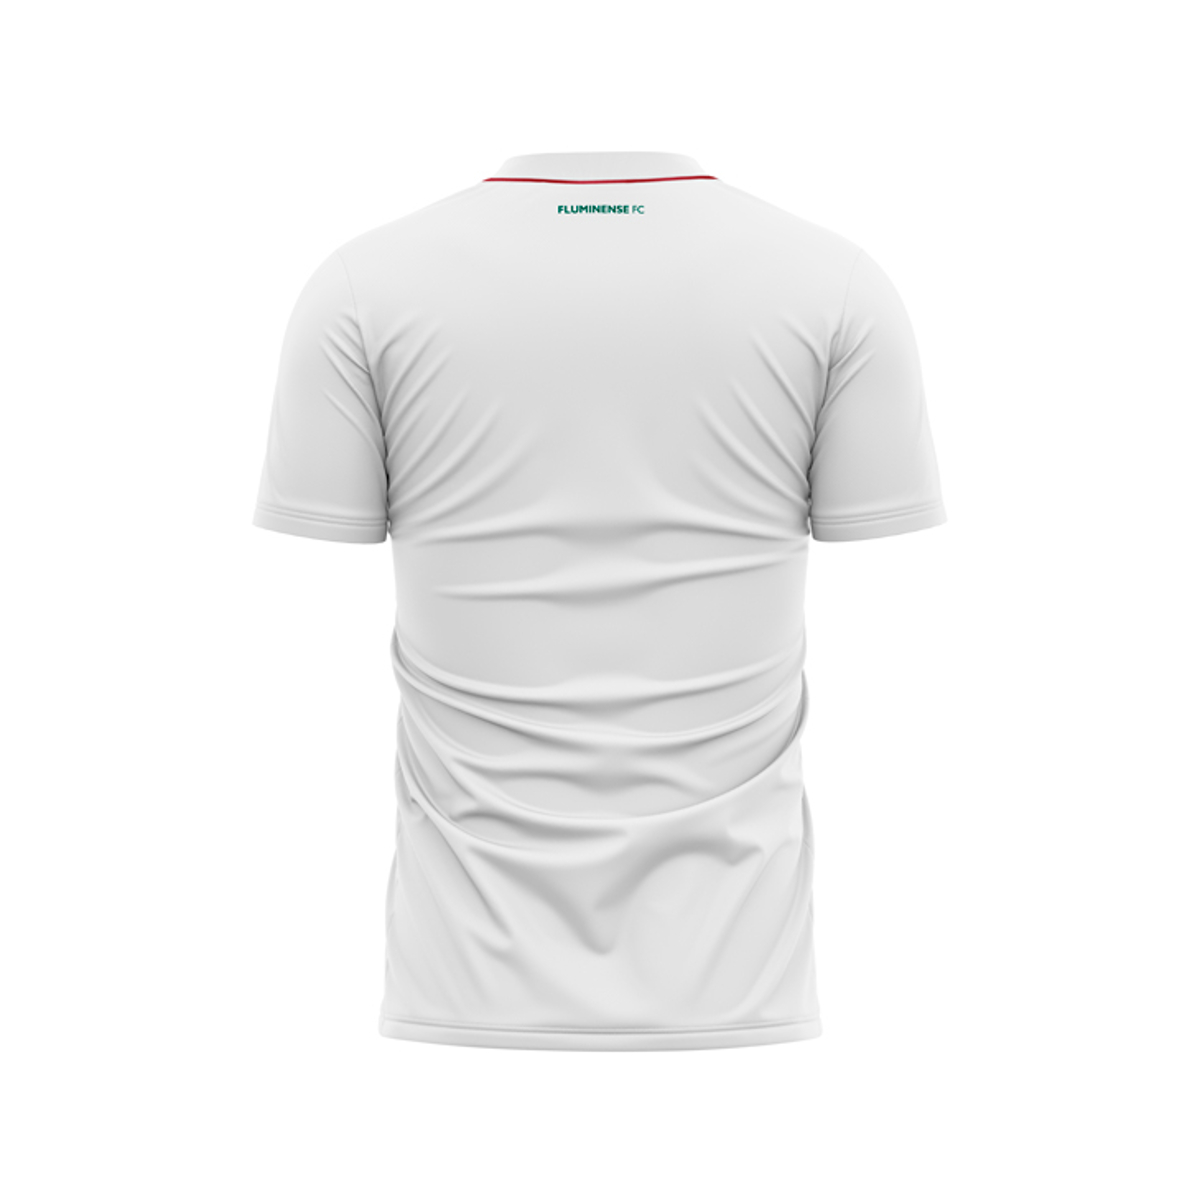 Kit Fluminense Camisa e Chaveiro - Camisa Immersive + Chaveiro Brasão